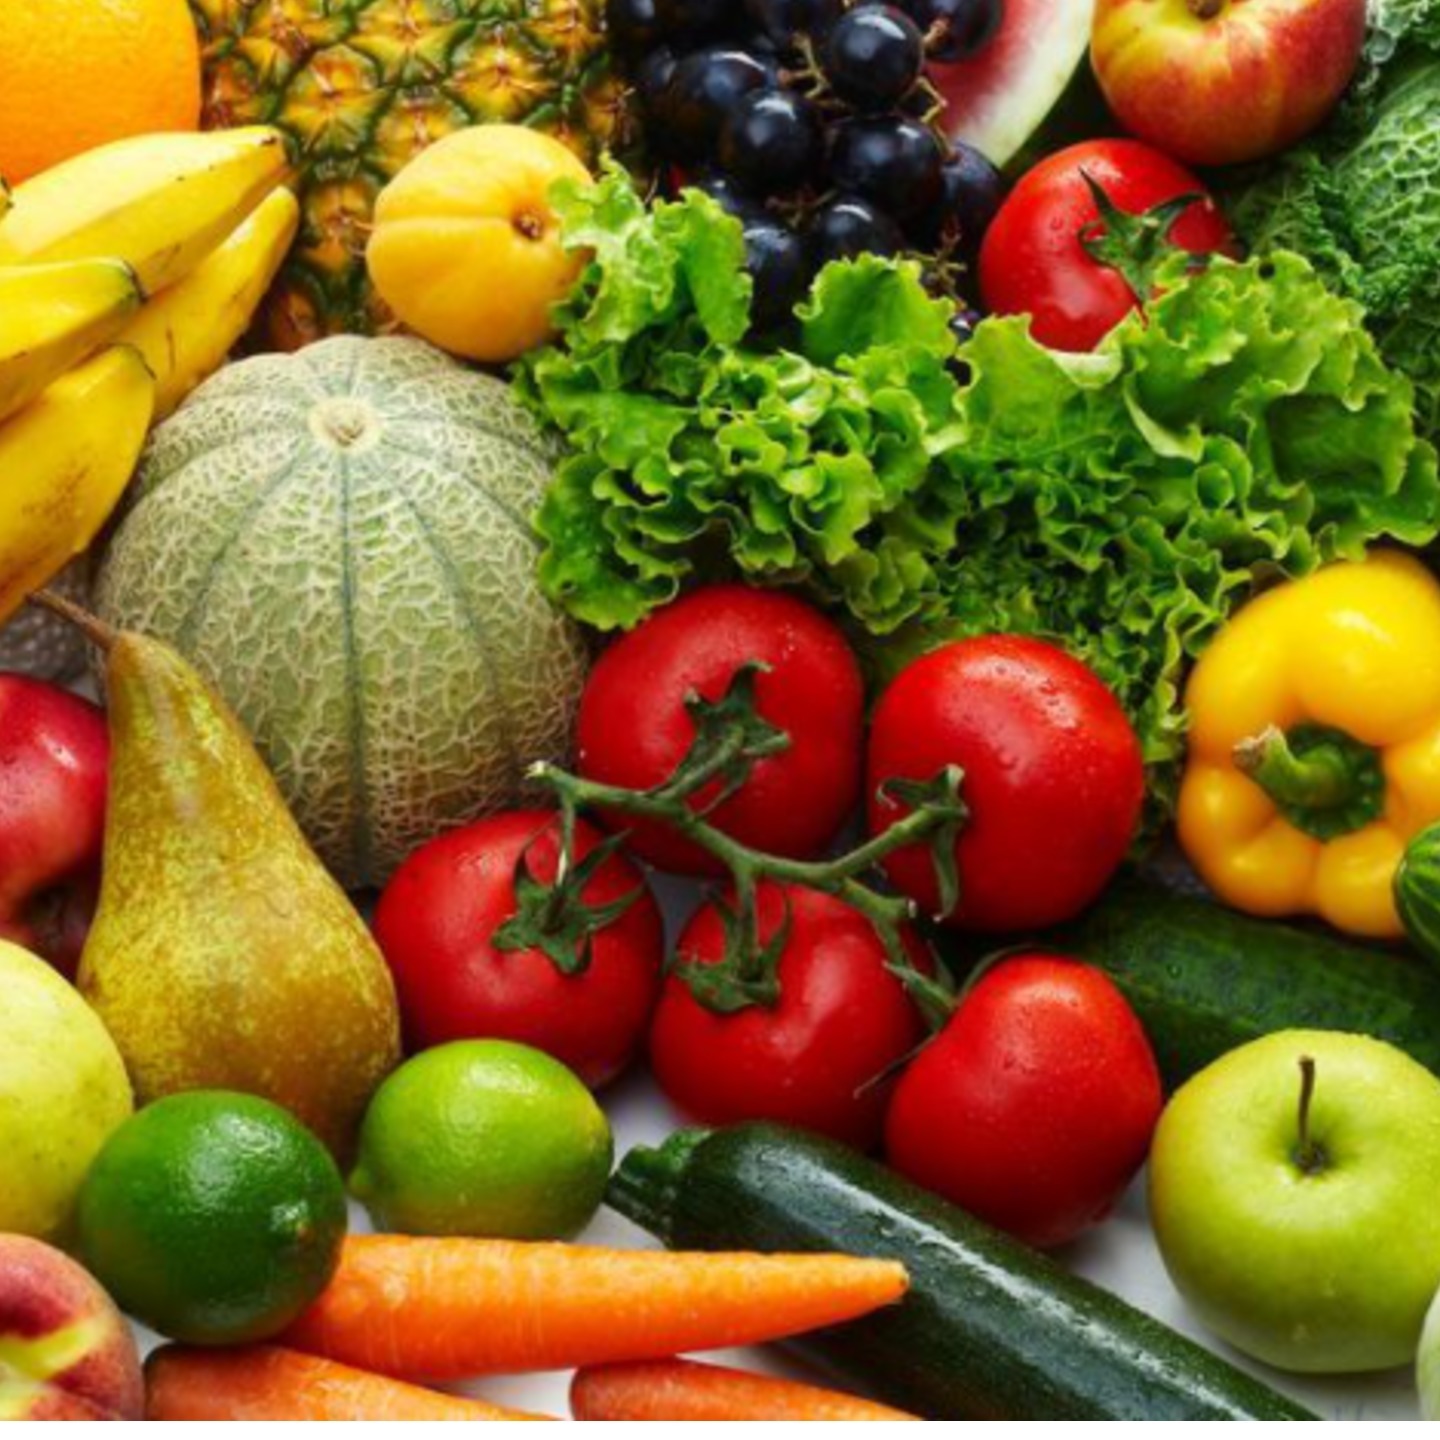 Ешь больше фруктов и овощей. Овощи и фрукты. JDJIB B aheernb. Красивые овощи и фрукты. Овощи, фрукты, ягоды.